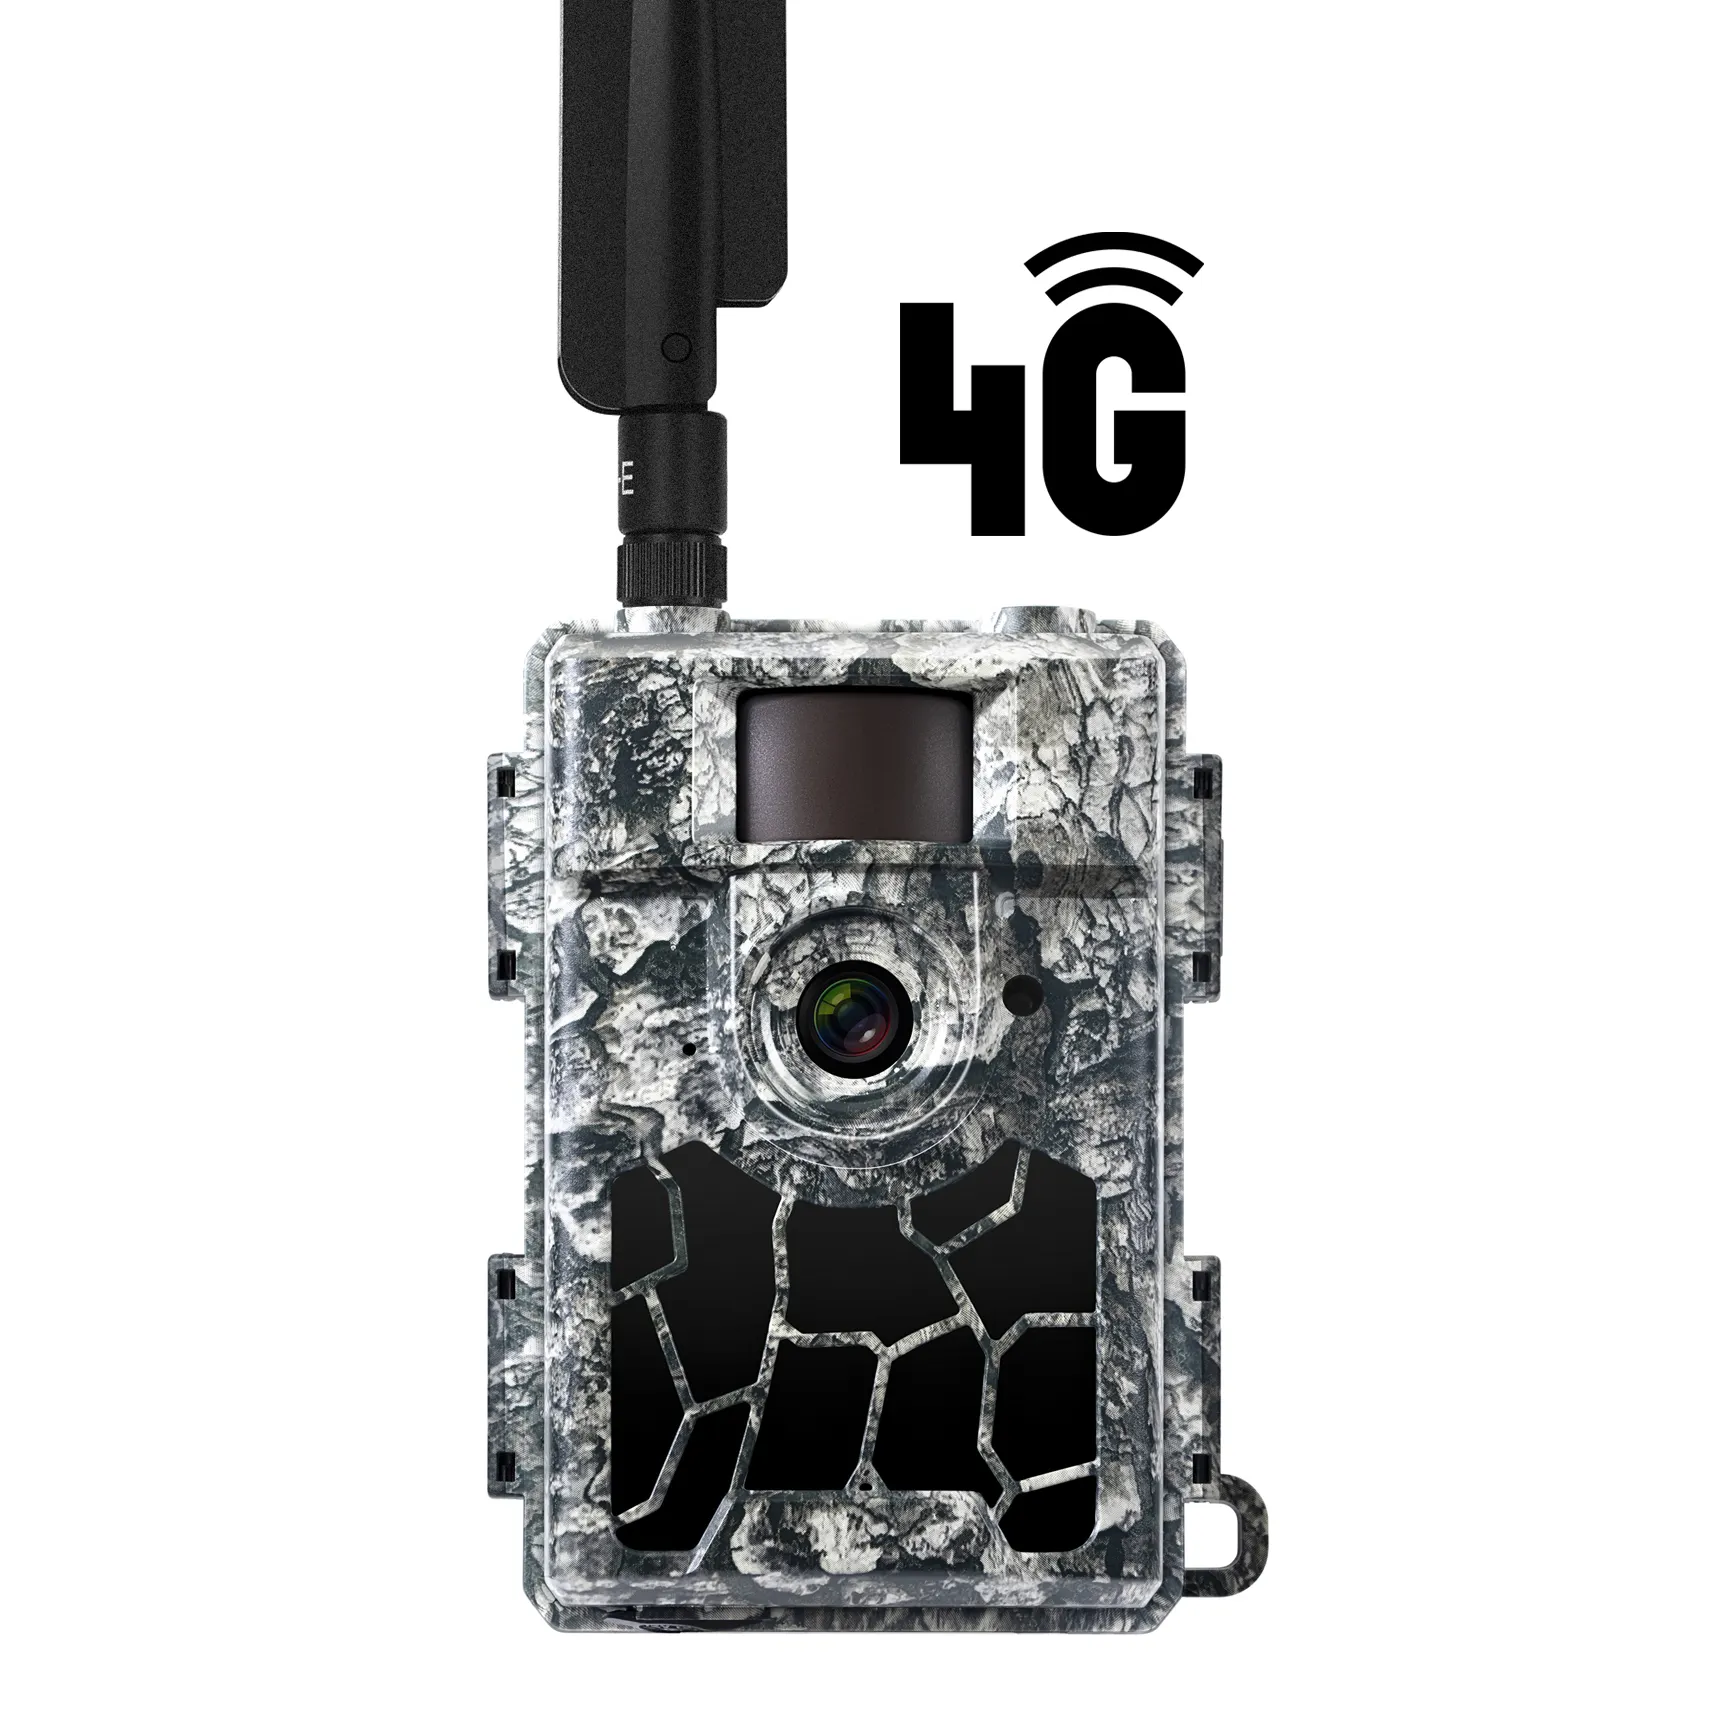 Willfine屋外ワイヤレス4Glteクラウドアプリセキュリティトレイルゲームカメラ24mpハンティングトレイルカメラ